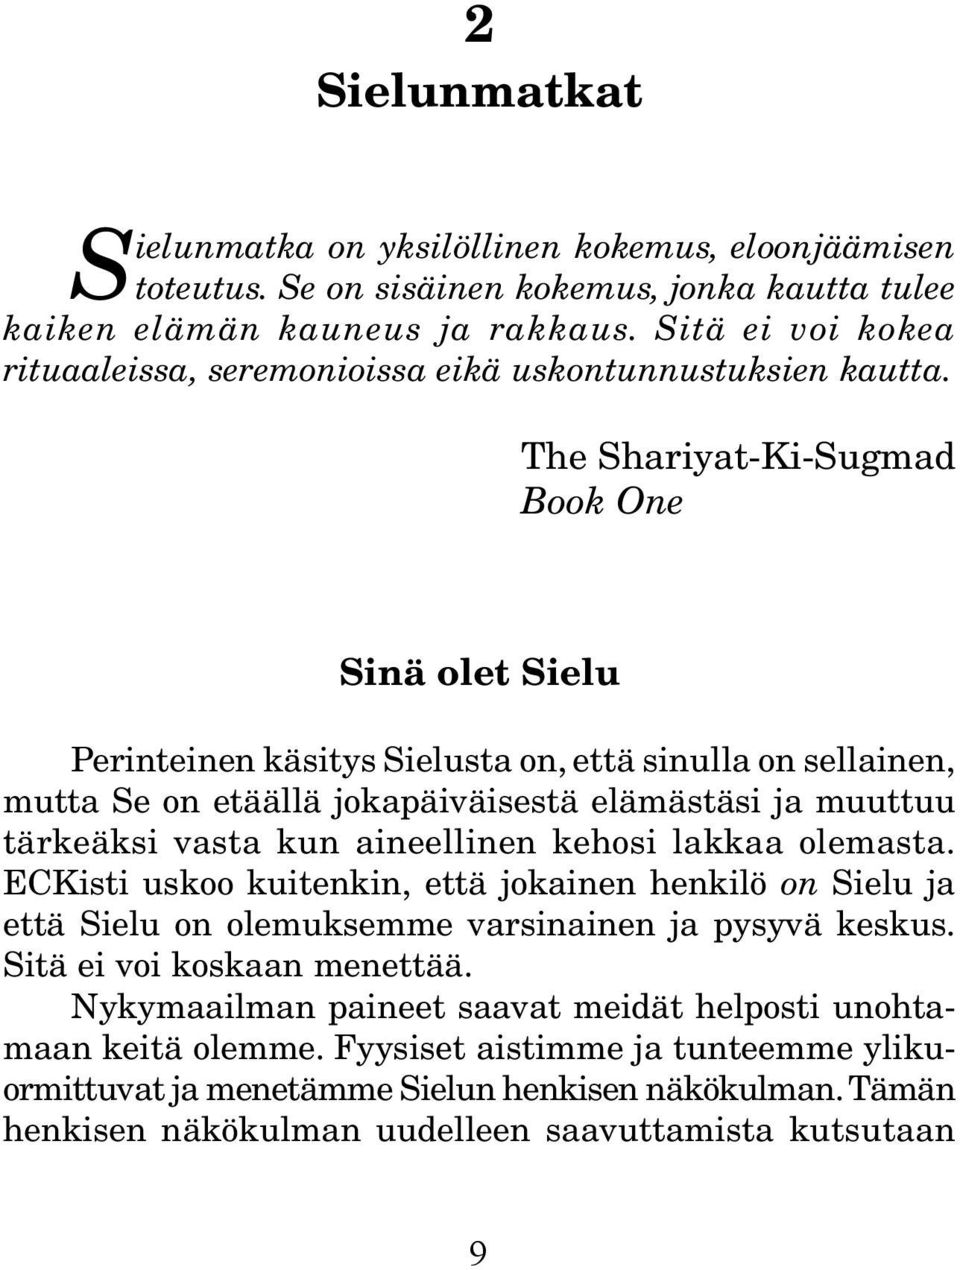 The Shariyat-Ki-Sugmad Book One Sinä olet Sielu Perinteinen käsitys Sielusta on, että sinulla on sellainen, mutta Se on etäällä jokapäiväisestä elämästäsi ja muuttuu tärkeäksi vasta kun aineellinen